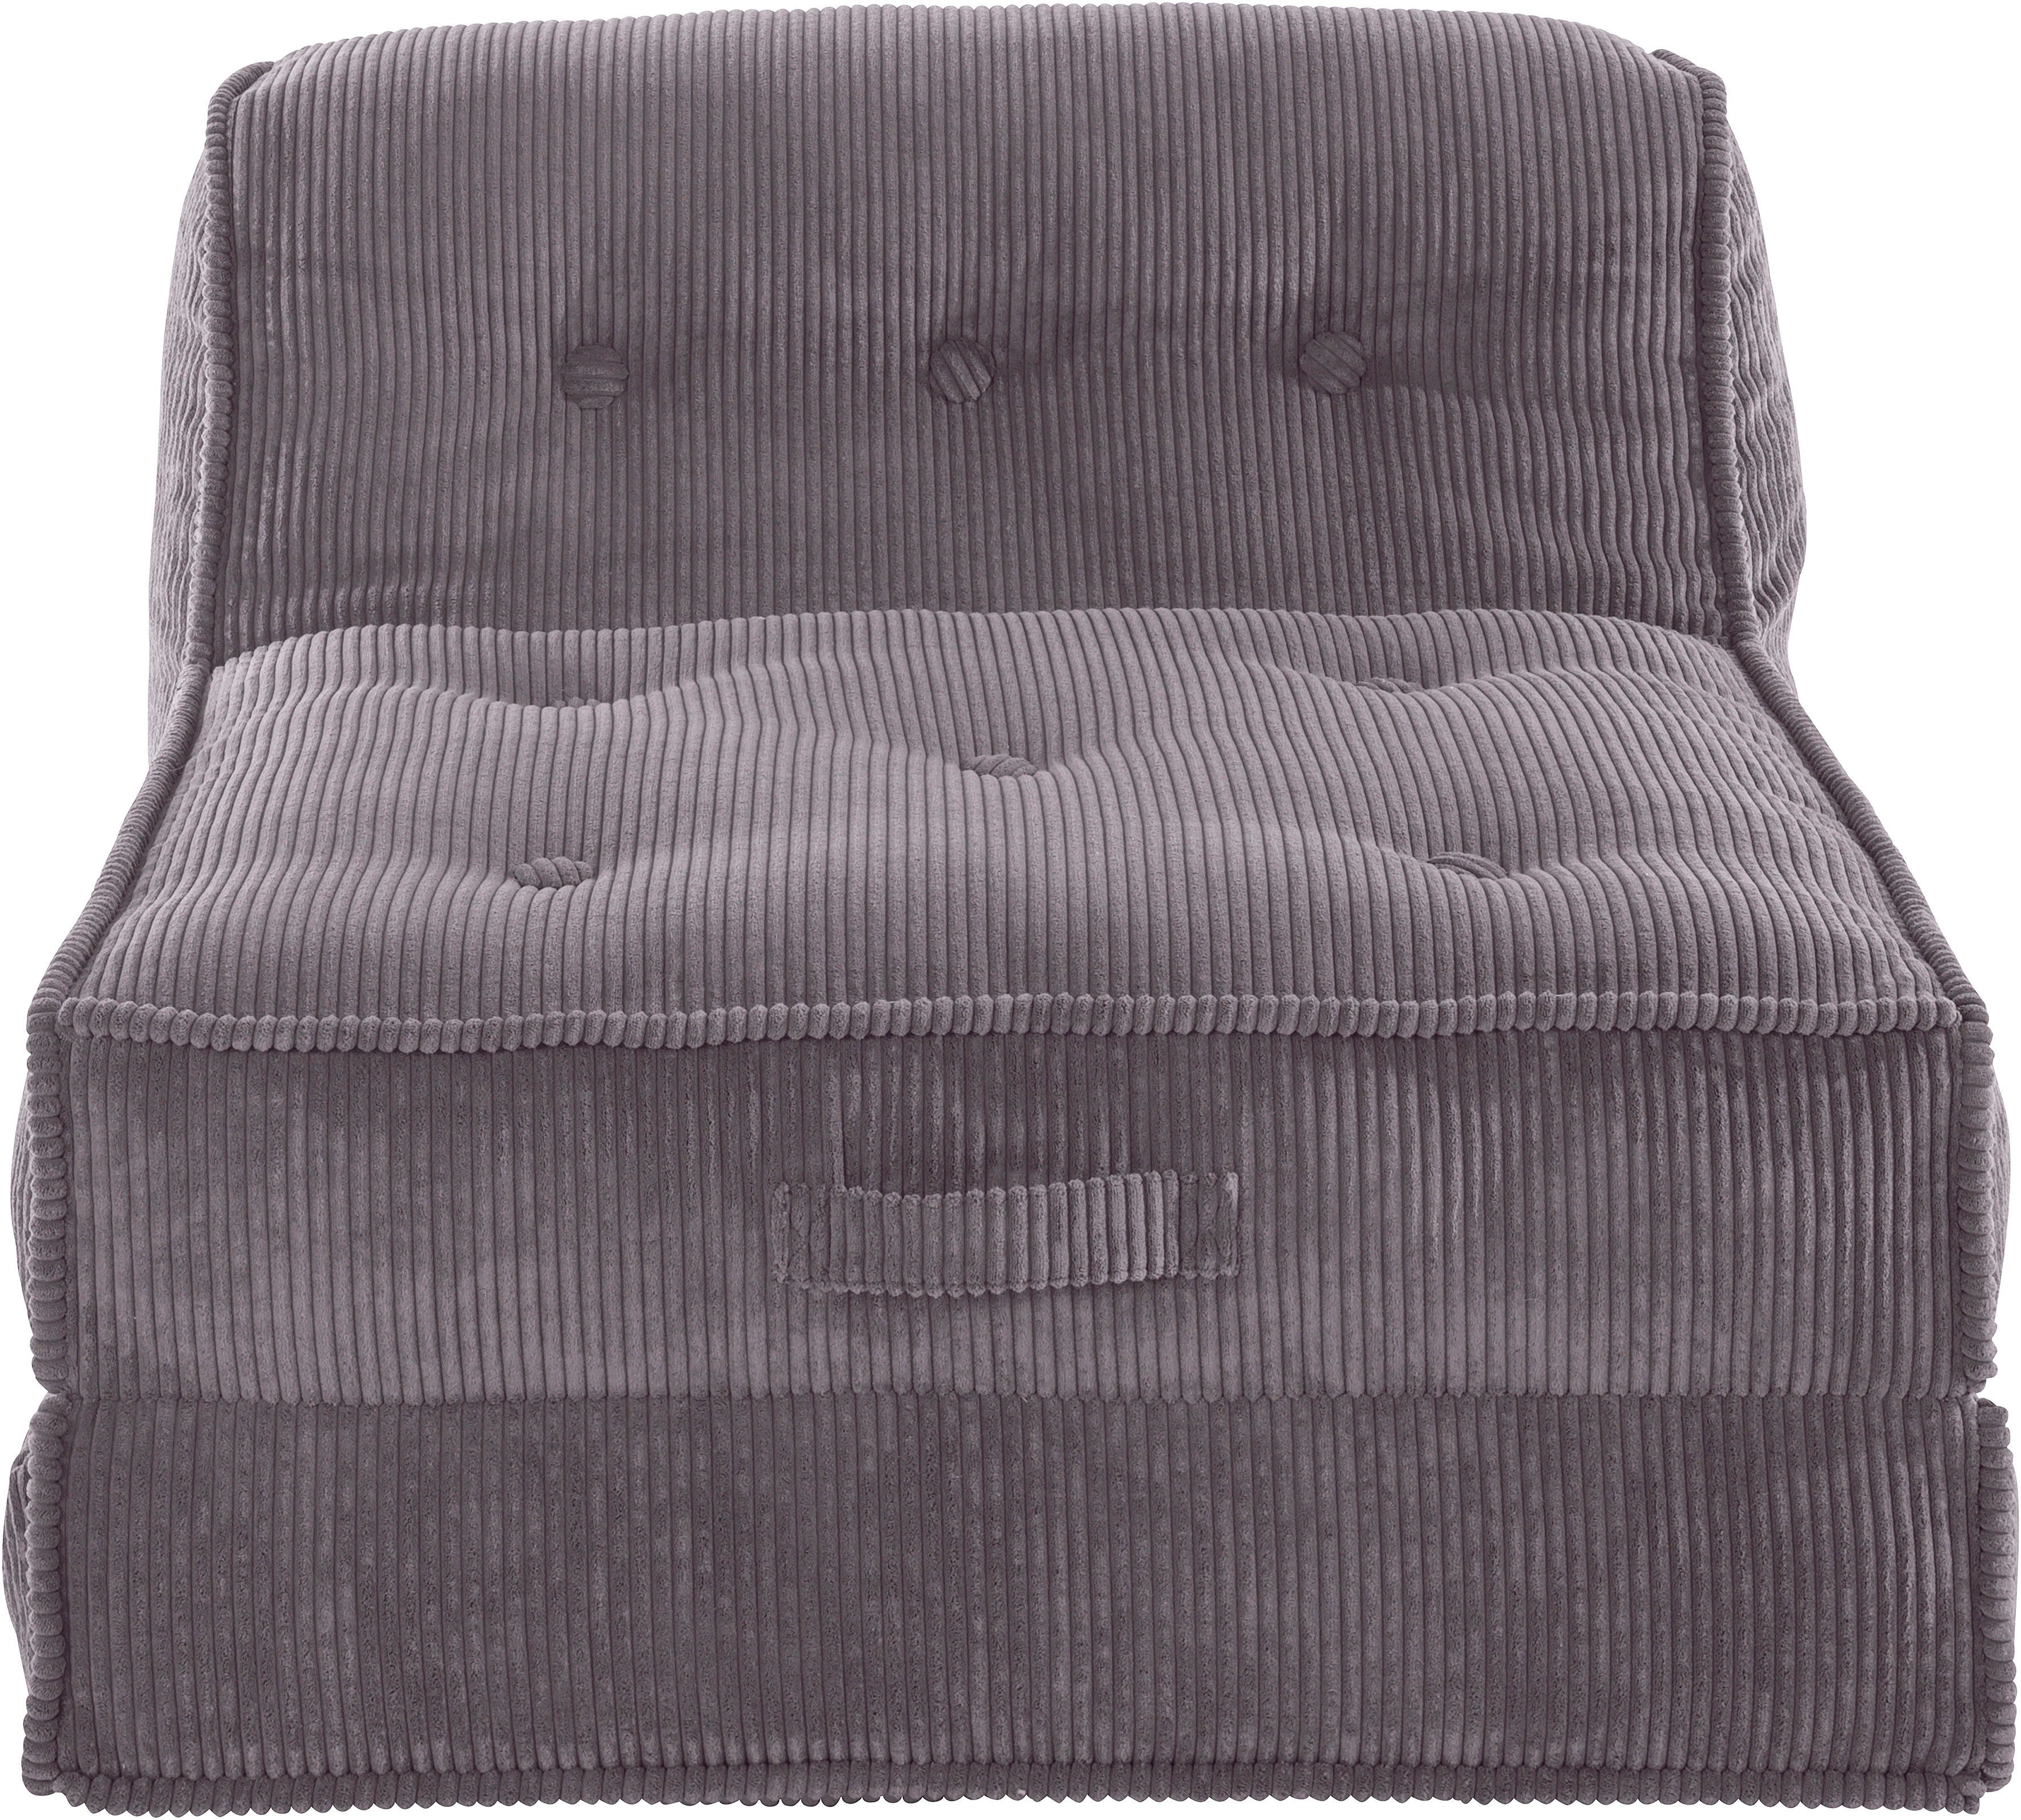 inosign fauteuil missy loungestoel van cord, in 2 afmetingen, met slaapfunctie, poeffunctie. grijs